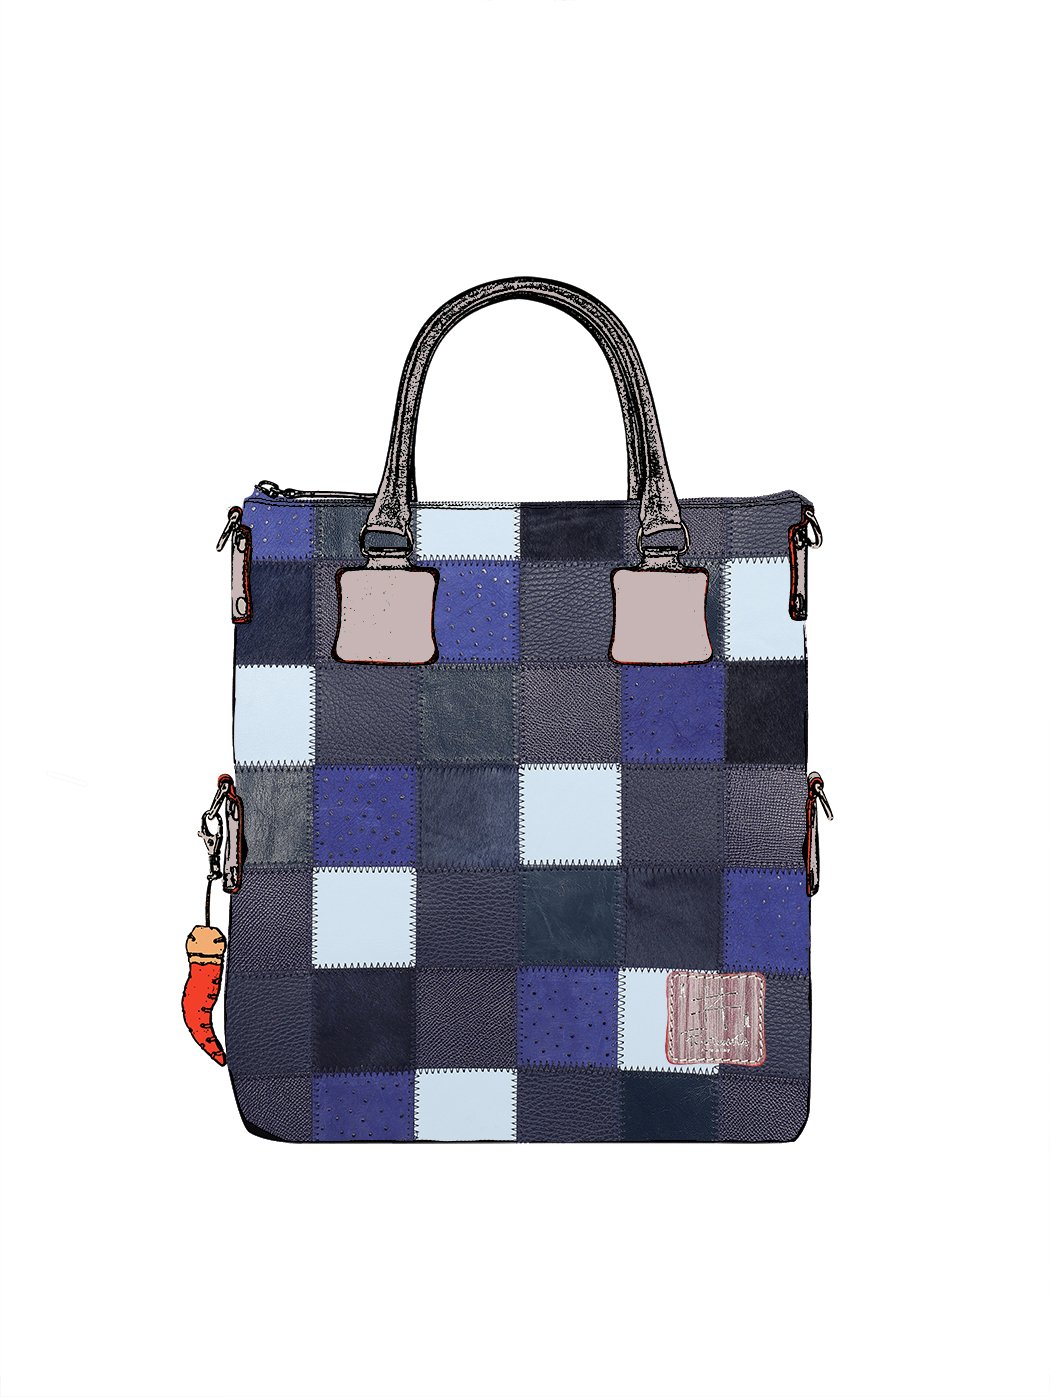 Дизайнерская сумка из коллекции Fortunata в стиле пэчворк сине - серого цвета